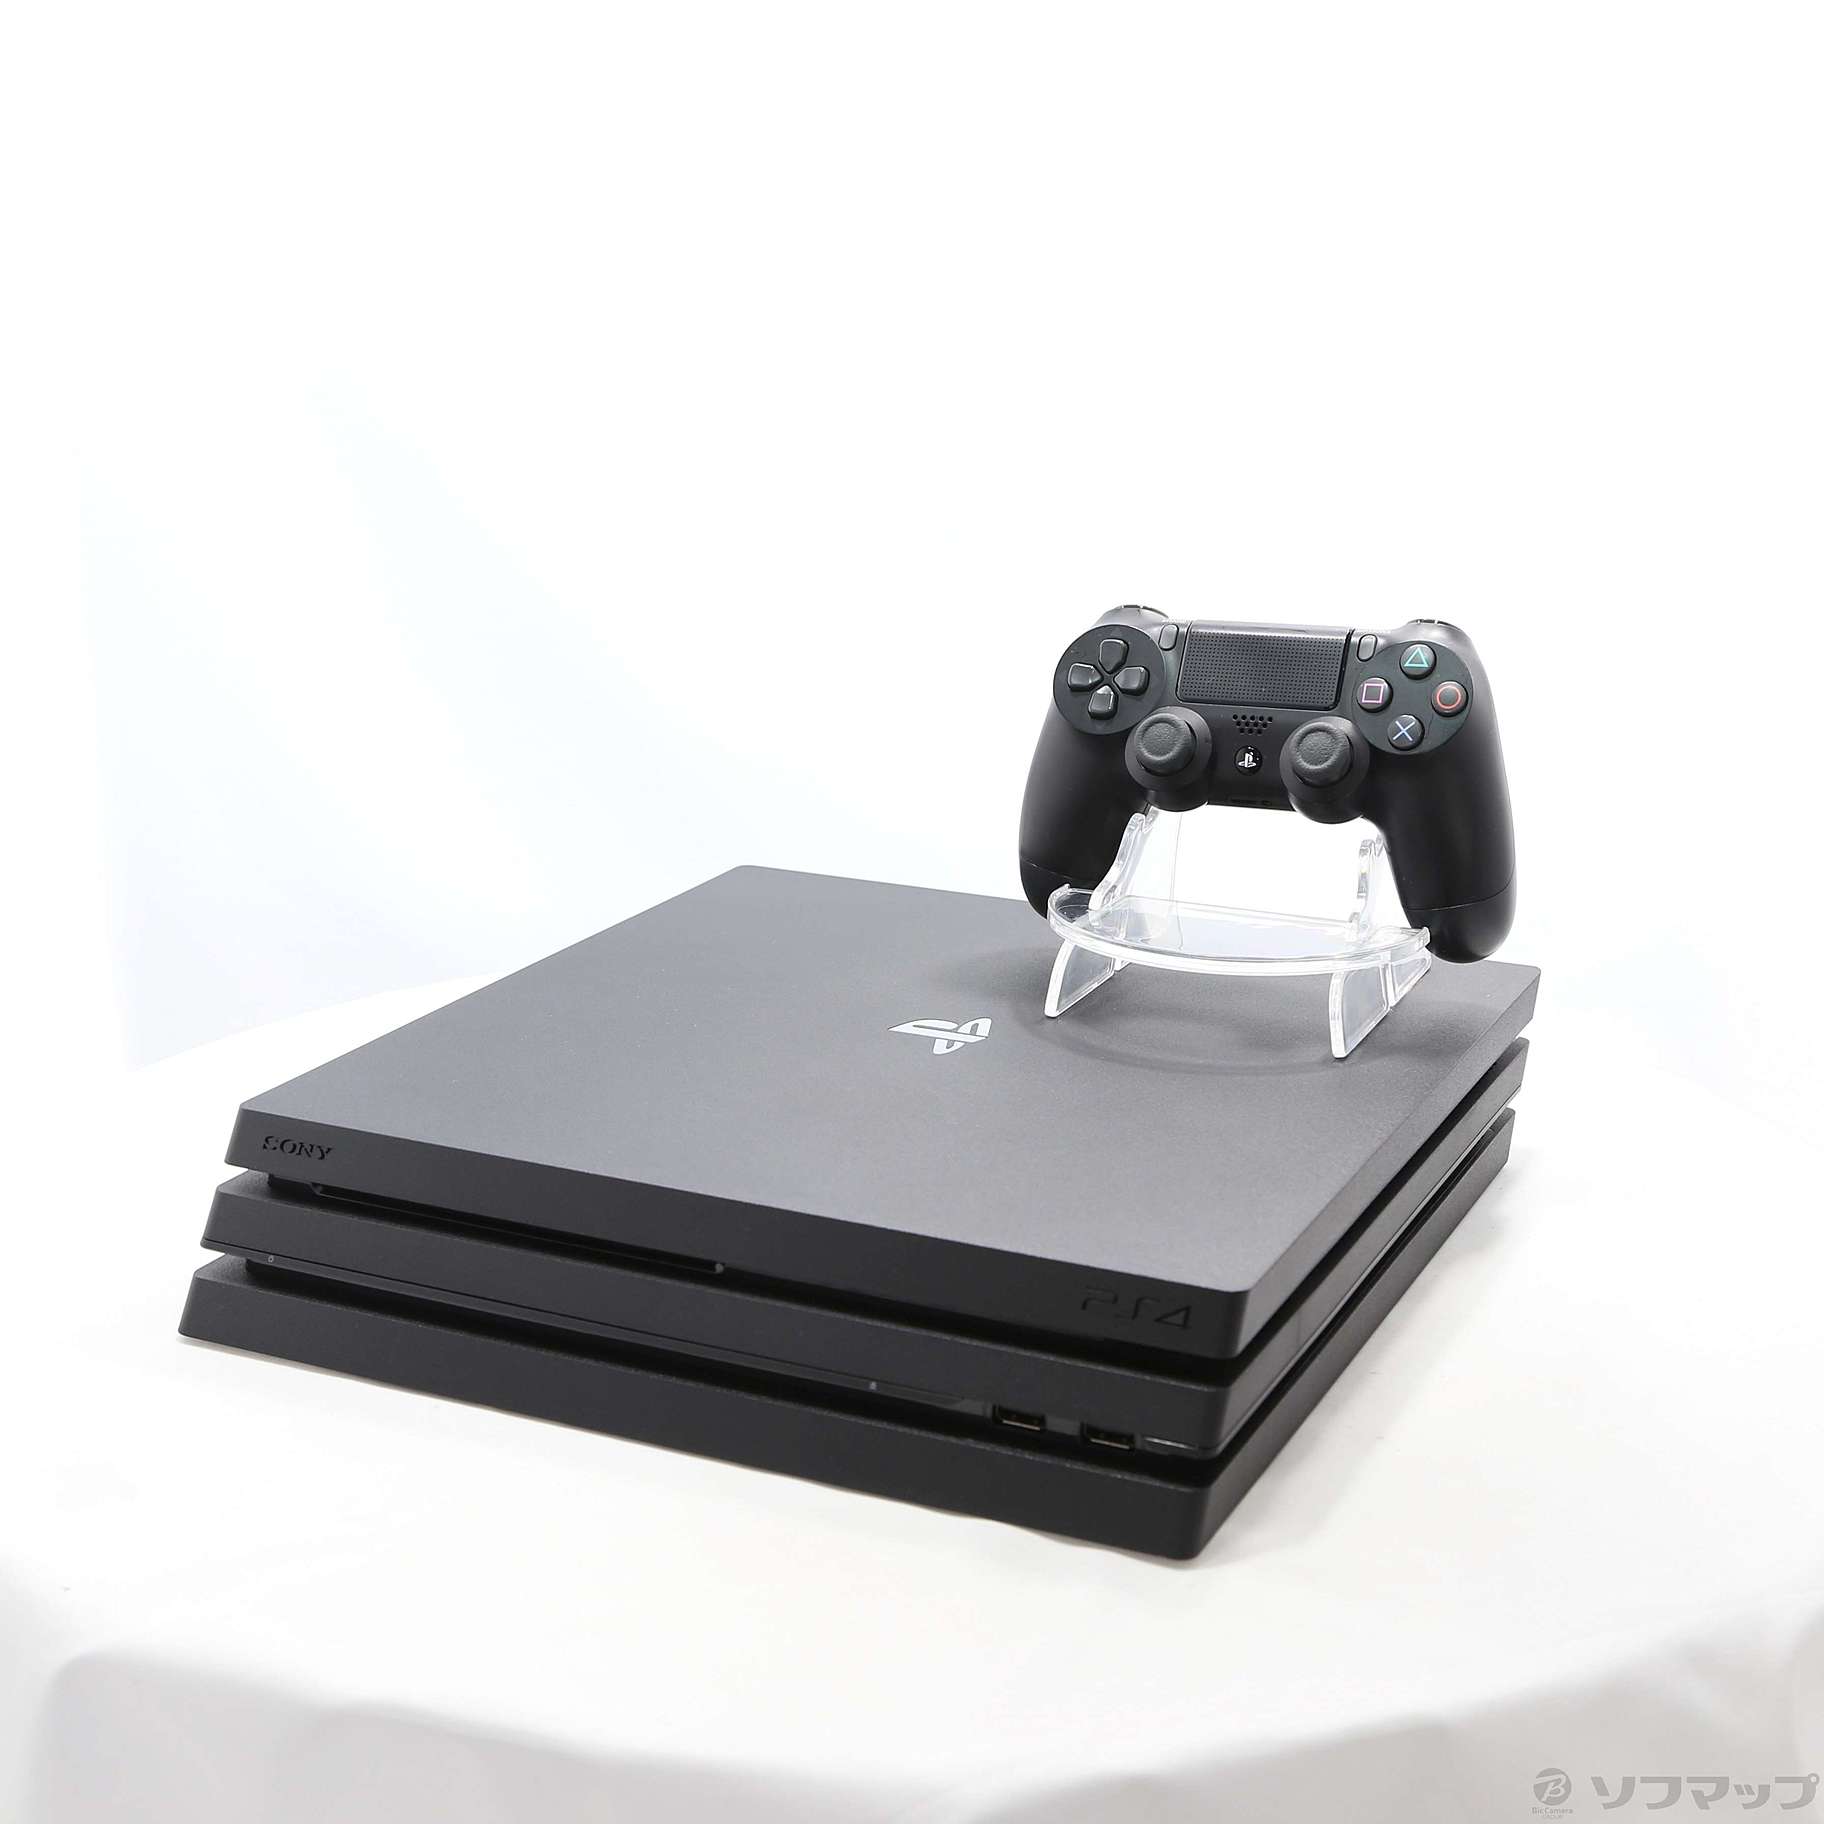 PlayStation 4 Pro ジェット・ブラック 1TB CUH-7100BB